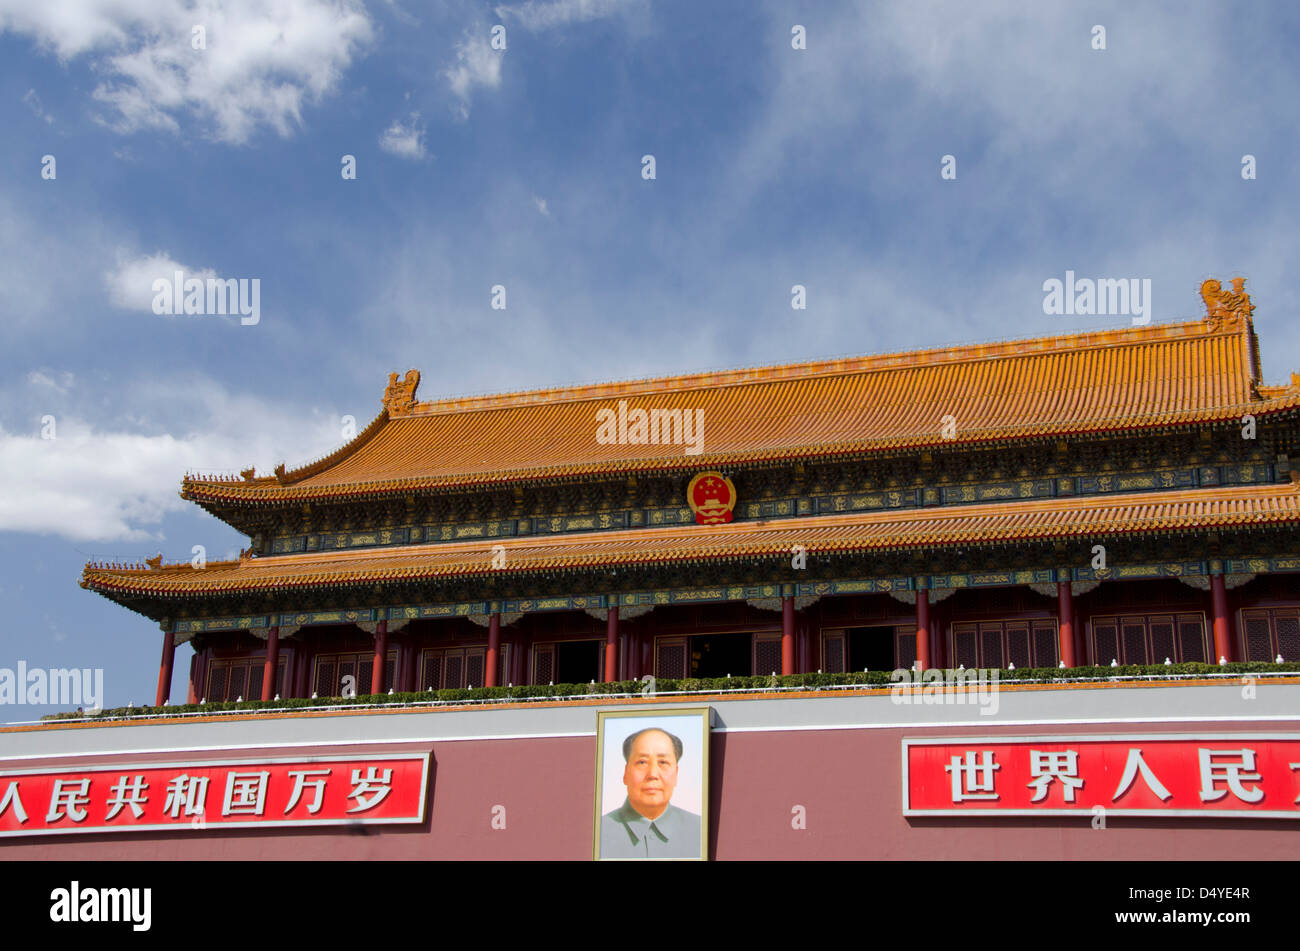 Cina, Pechino, Città Proibita. Porta della Pace Celeste con il ritratto di Mao, entrata alla Città Proibita da piazza Tiananmen. Foto Stock